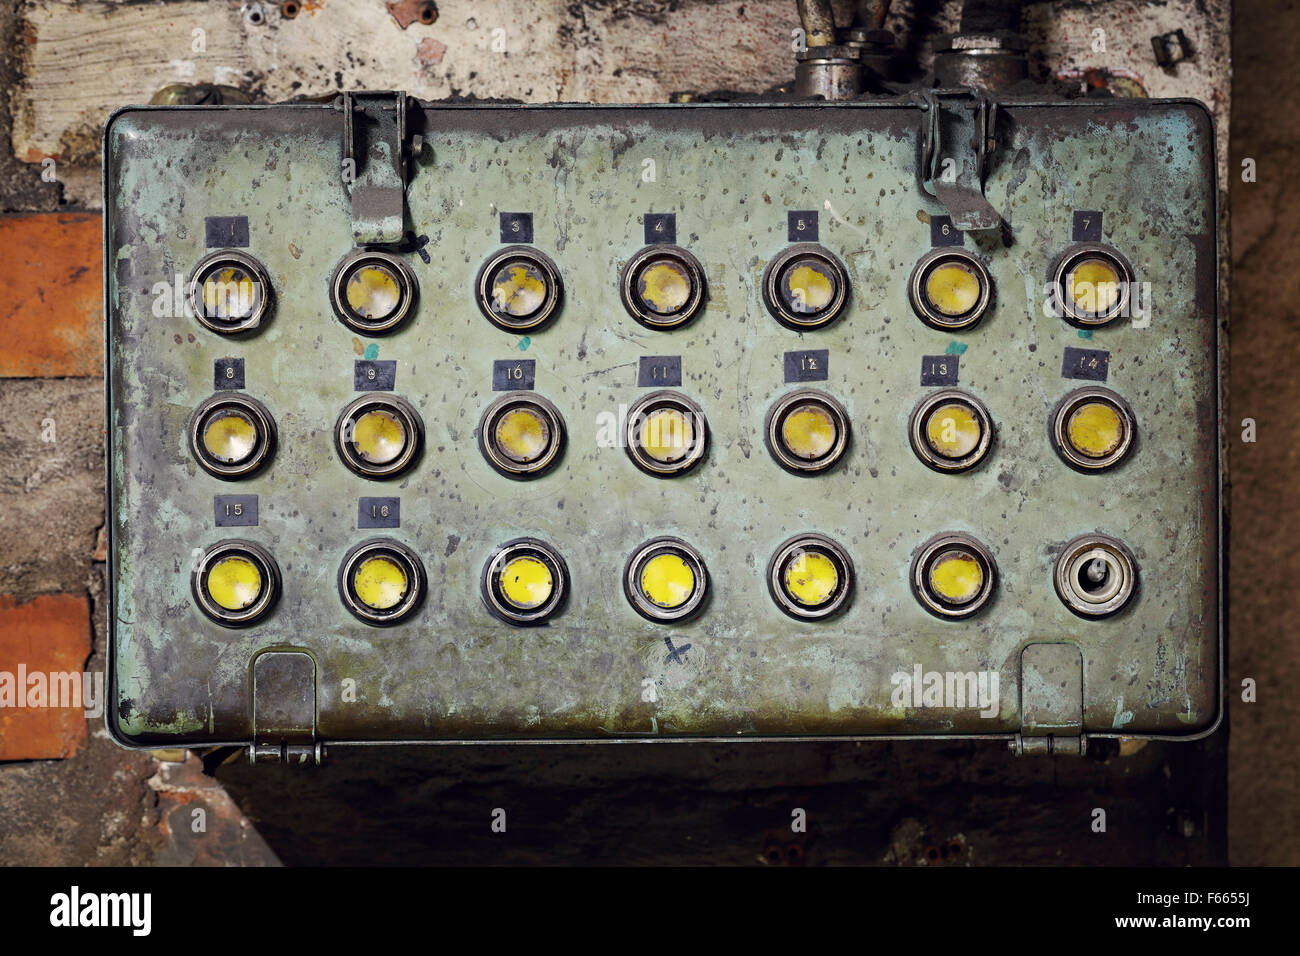 Cuadro eléctrico viejo con botones pulsadores en una vieja fábrica abandonada. Foto de stock